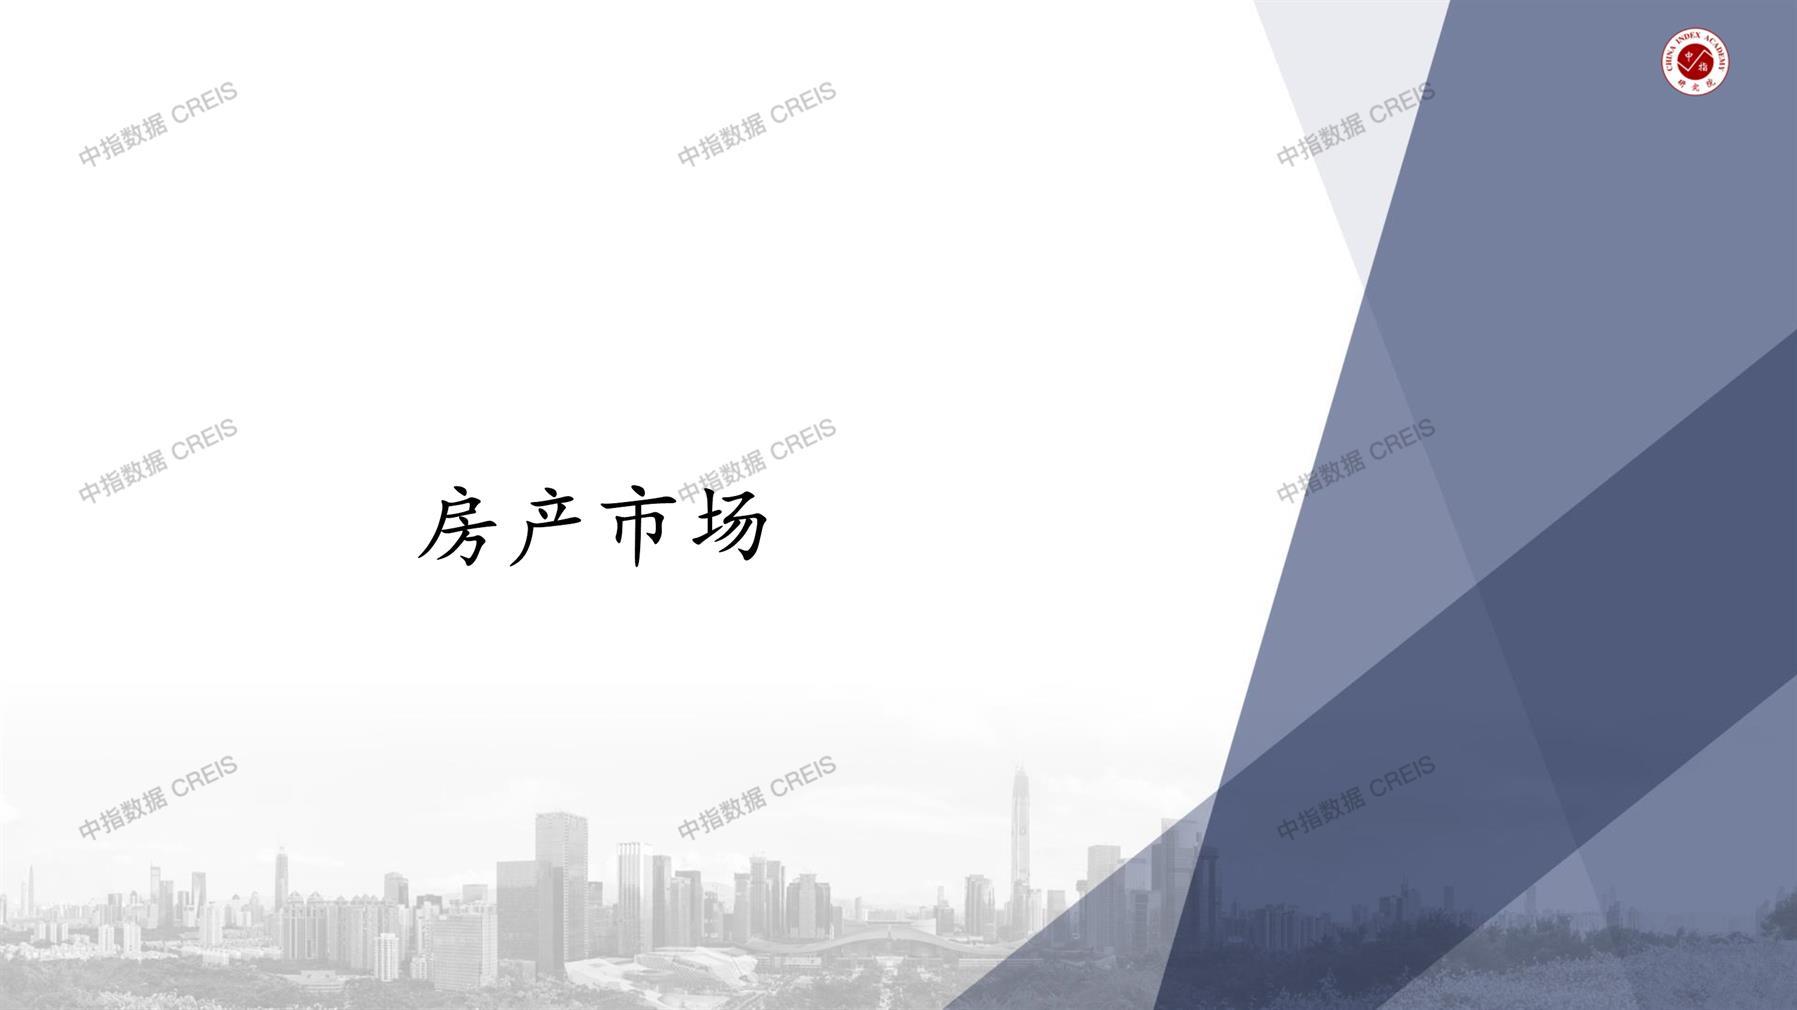 安庆、安庆房地产市场、商品房销售、住宅成交、土地市场、地块面积、安庆写字楼